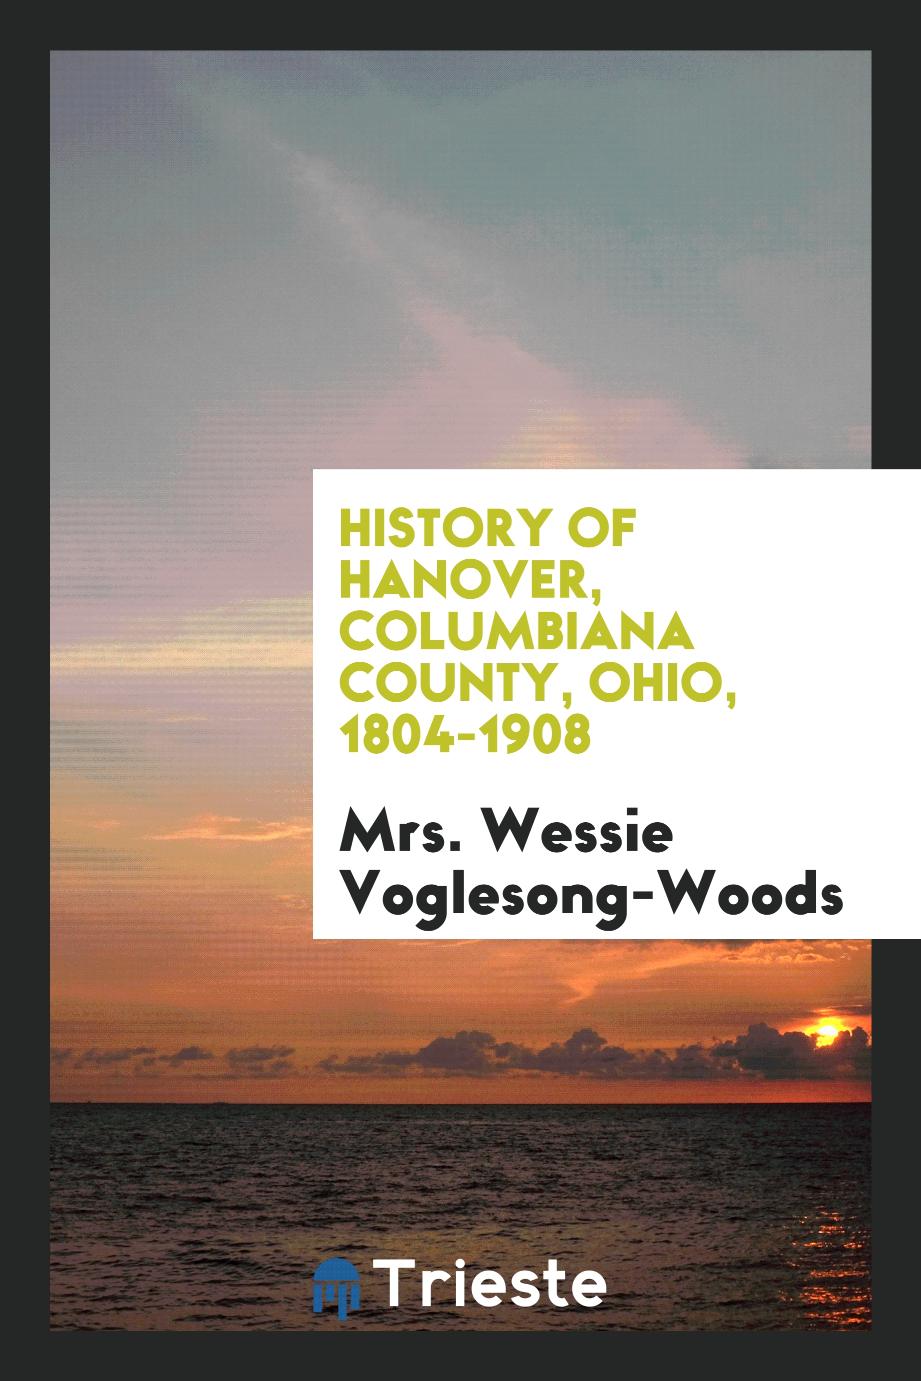 History of Hanover, Columbiana County, Ohio, 1804-1908